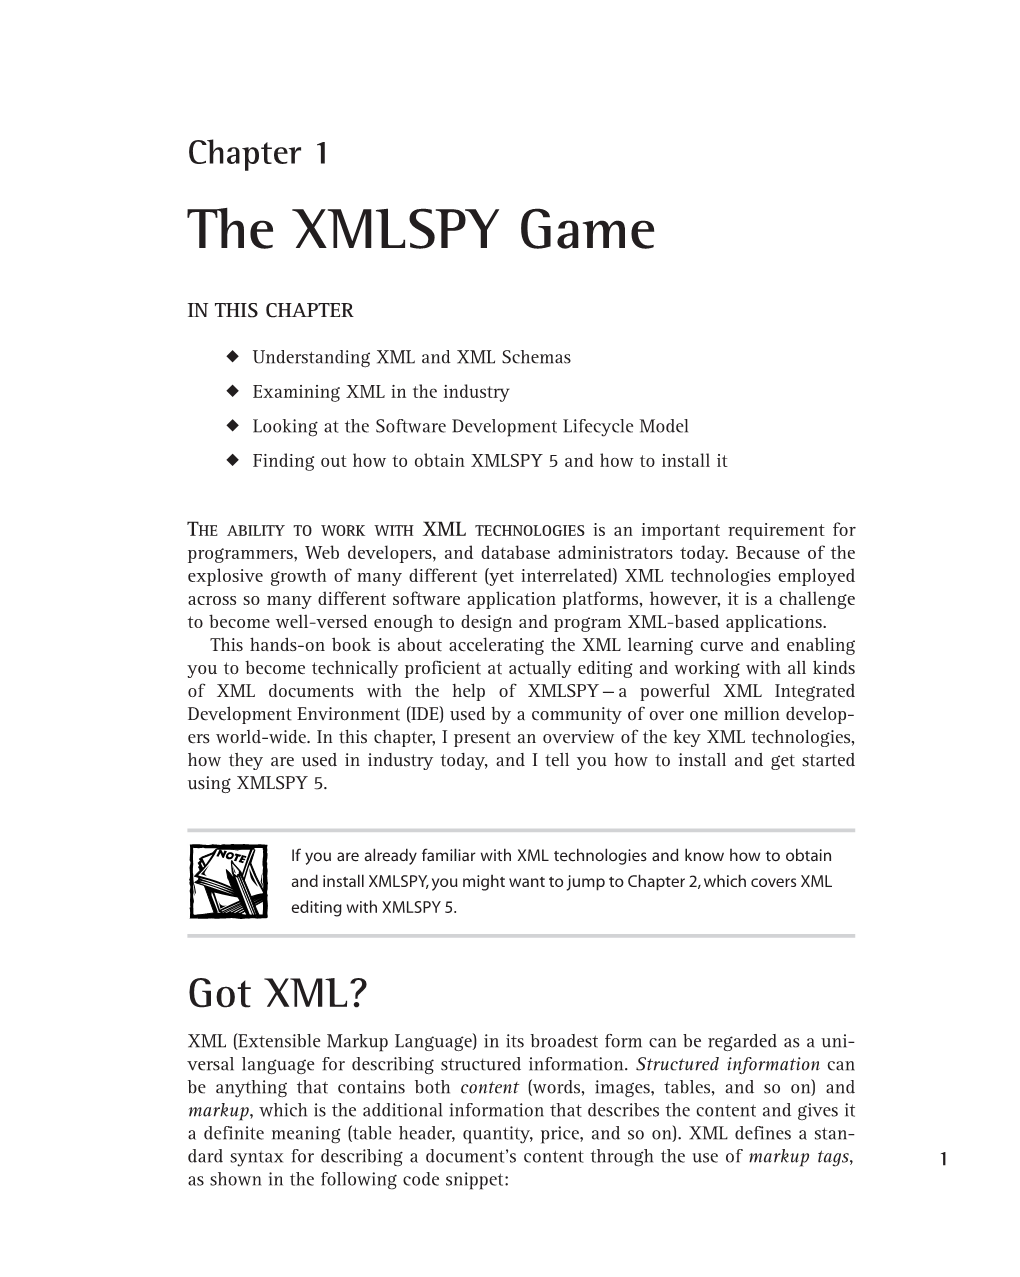 The XMLSPY Game